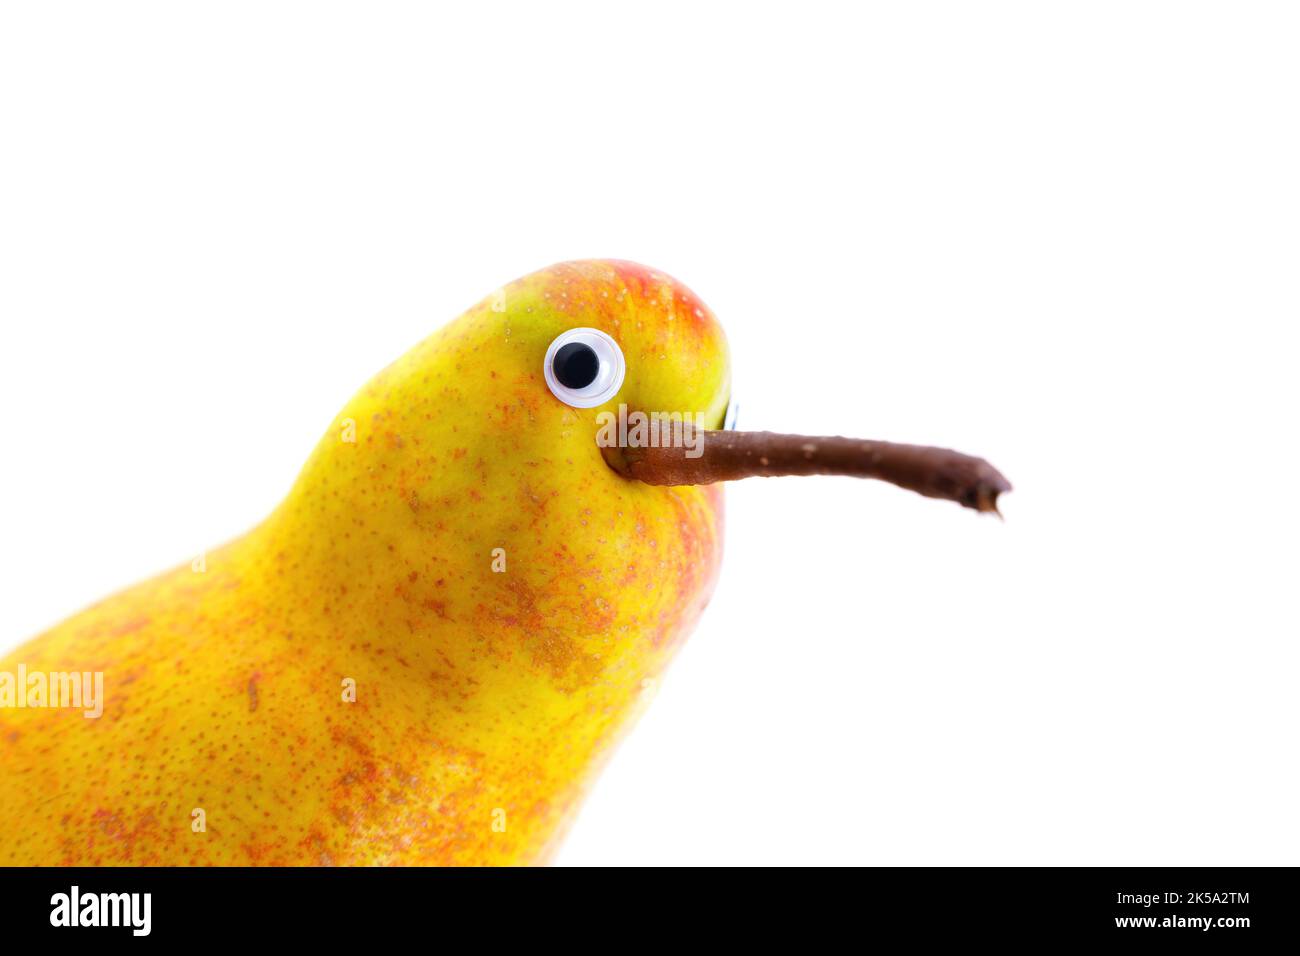 Lustige Birne-Figur mit schönen Augen, die einem Kiwi-Vogel ähneln, der um die Ecke schaut, isoliert auf weißem Hintergrund. Stockfoto